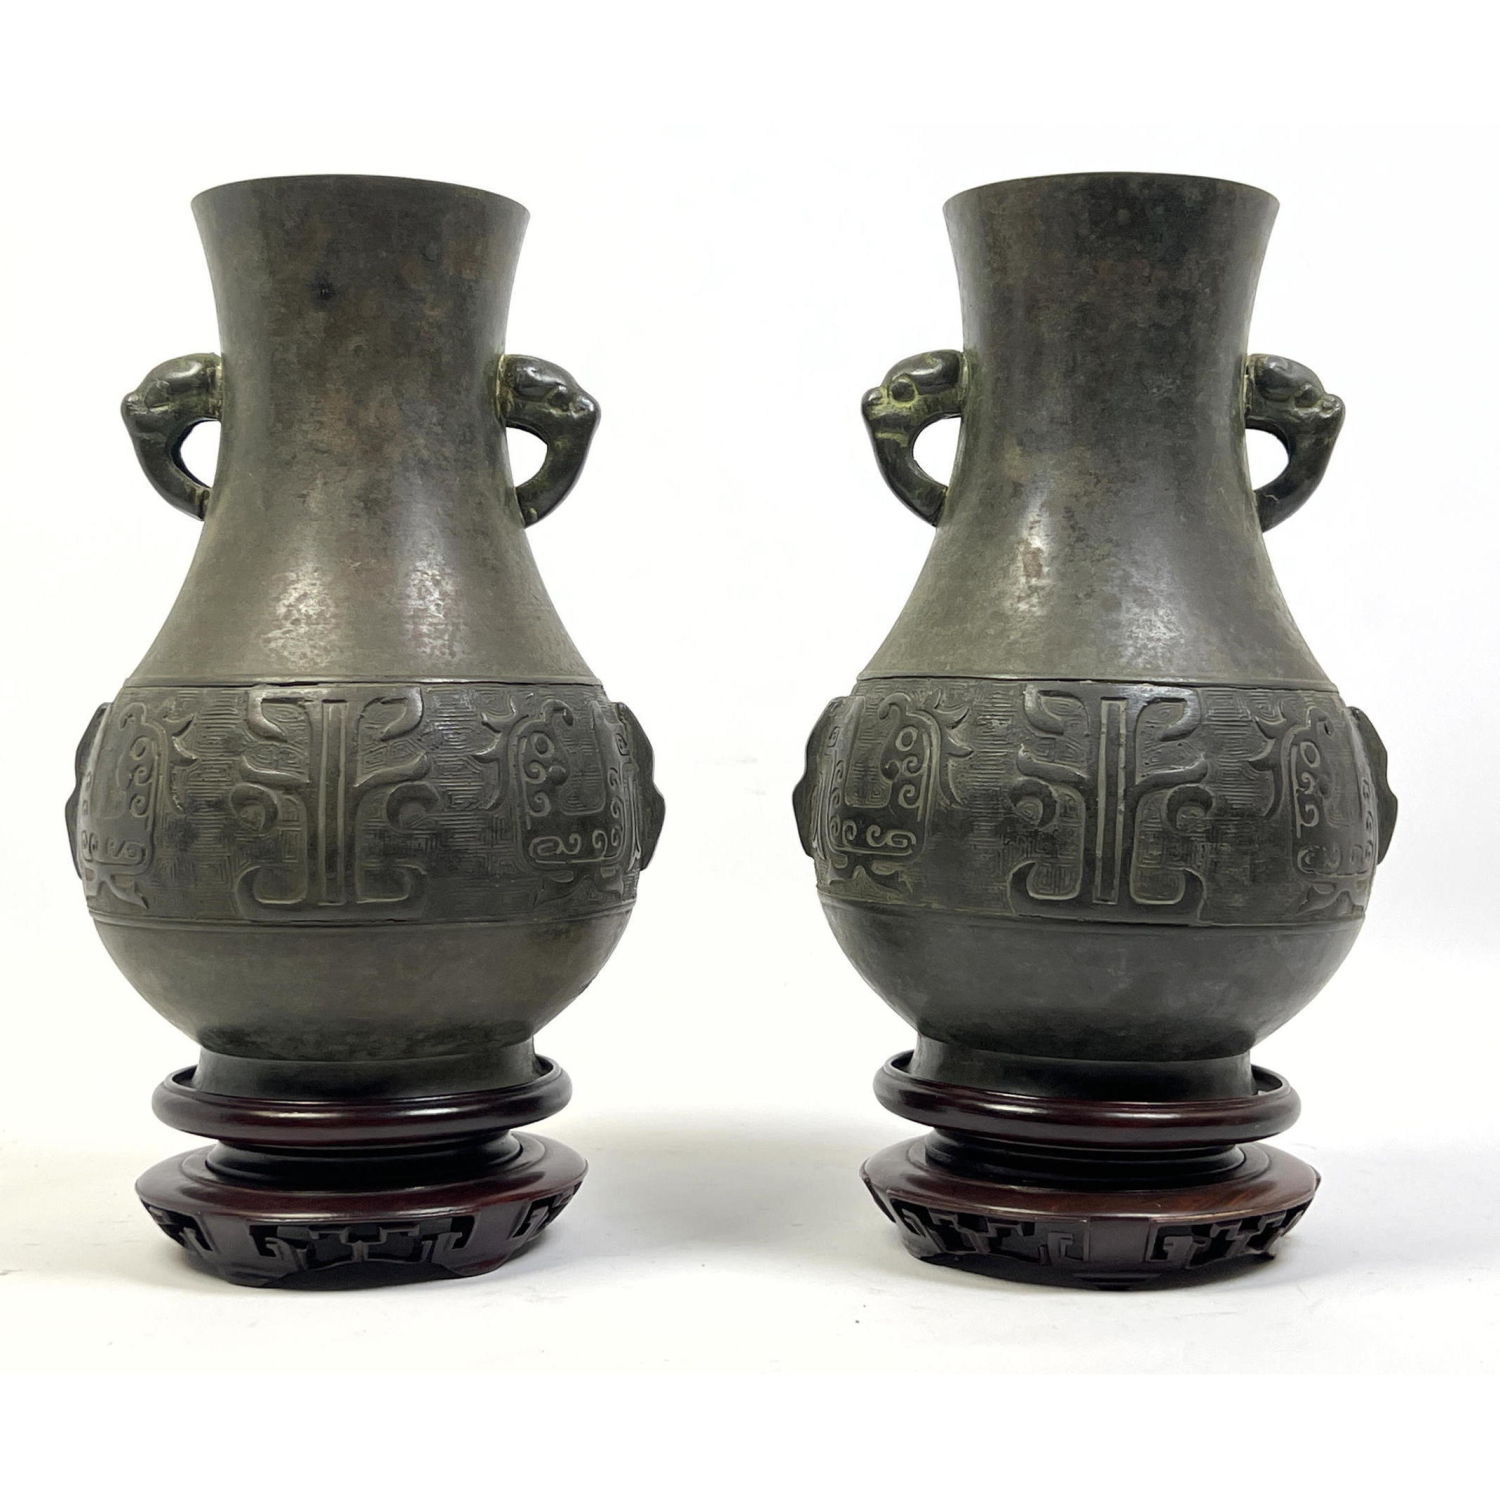 Pr Handled Asian Metal Vases. Incised